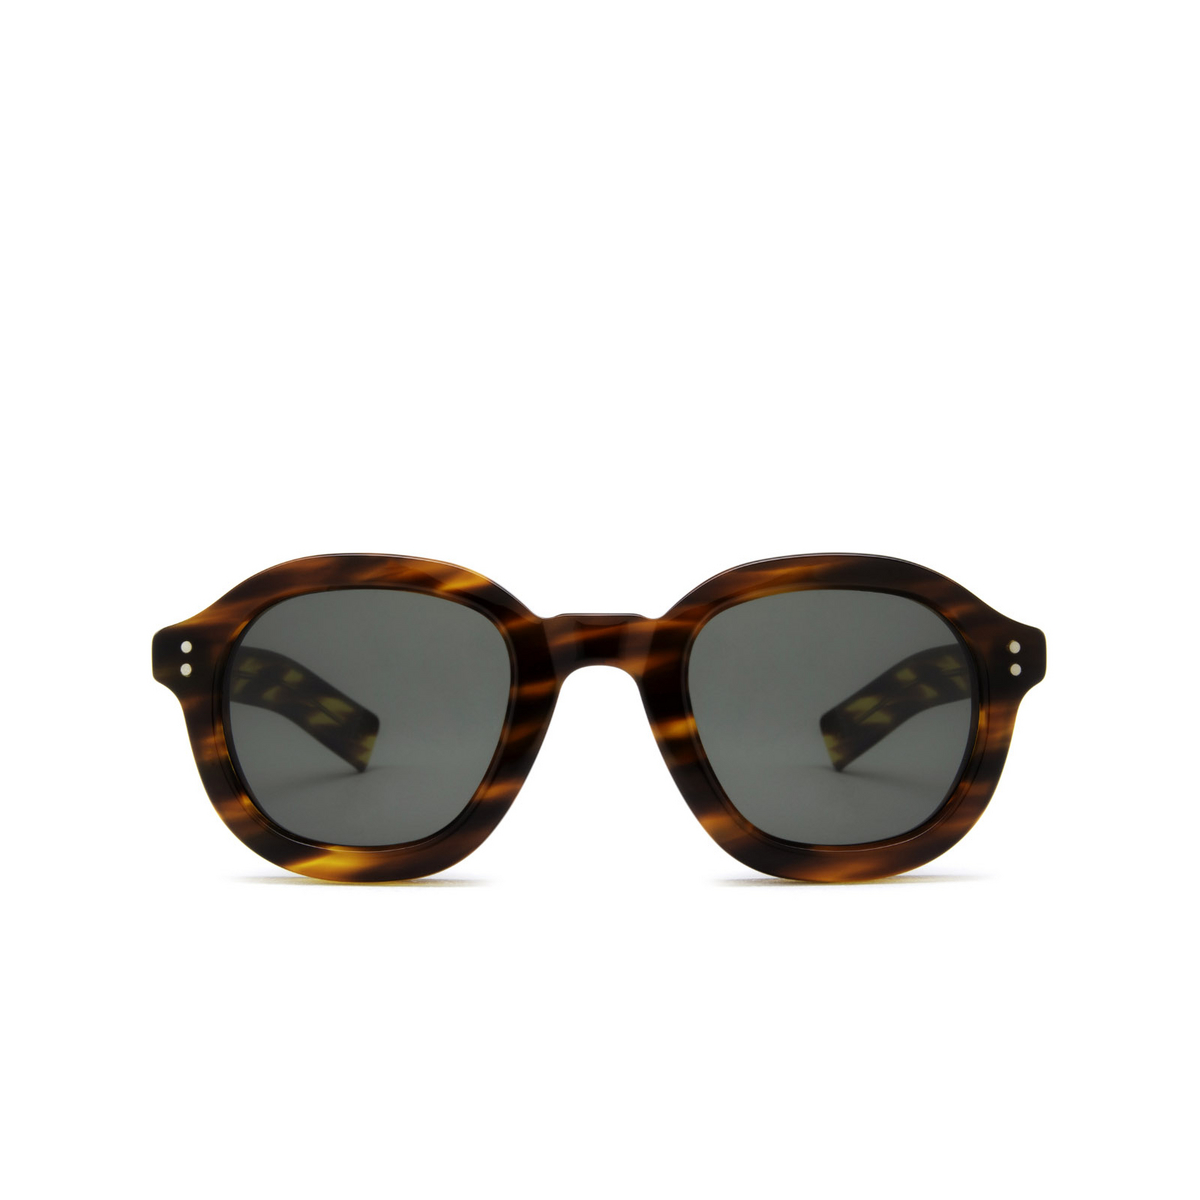 Lesca® Square Sunglasses: Largo color Havana 193 - front view.